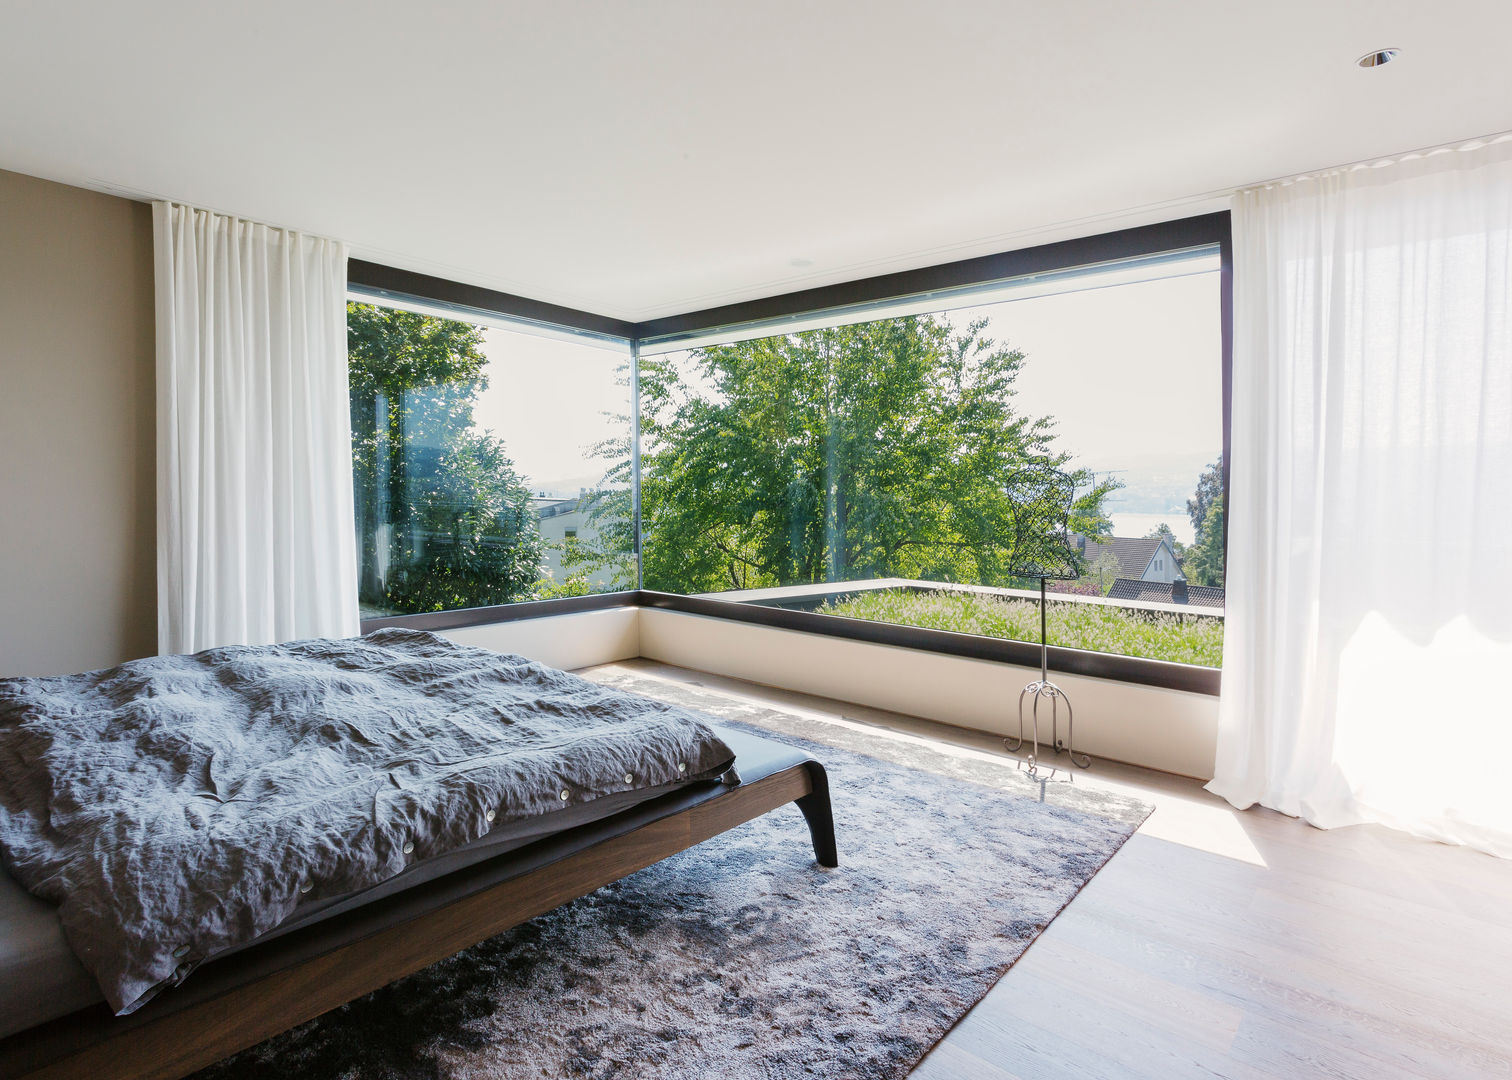 Objekt 336: Traumhaftes Einfamilienhaus mit Panoramablick , meier architekten zürich meier architekten zürich Спальня